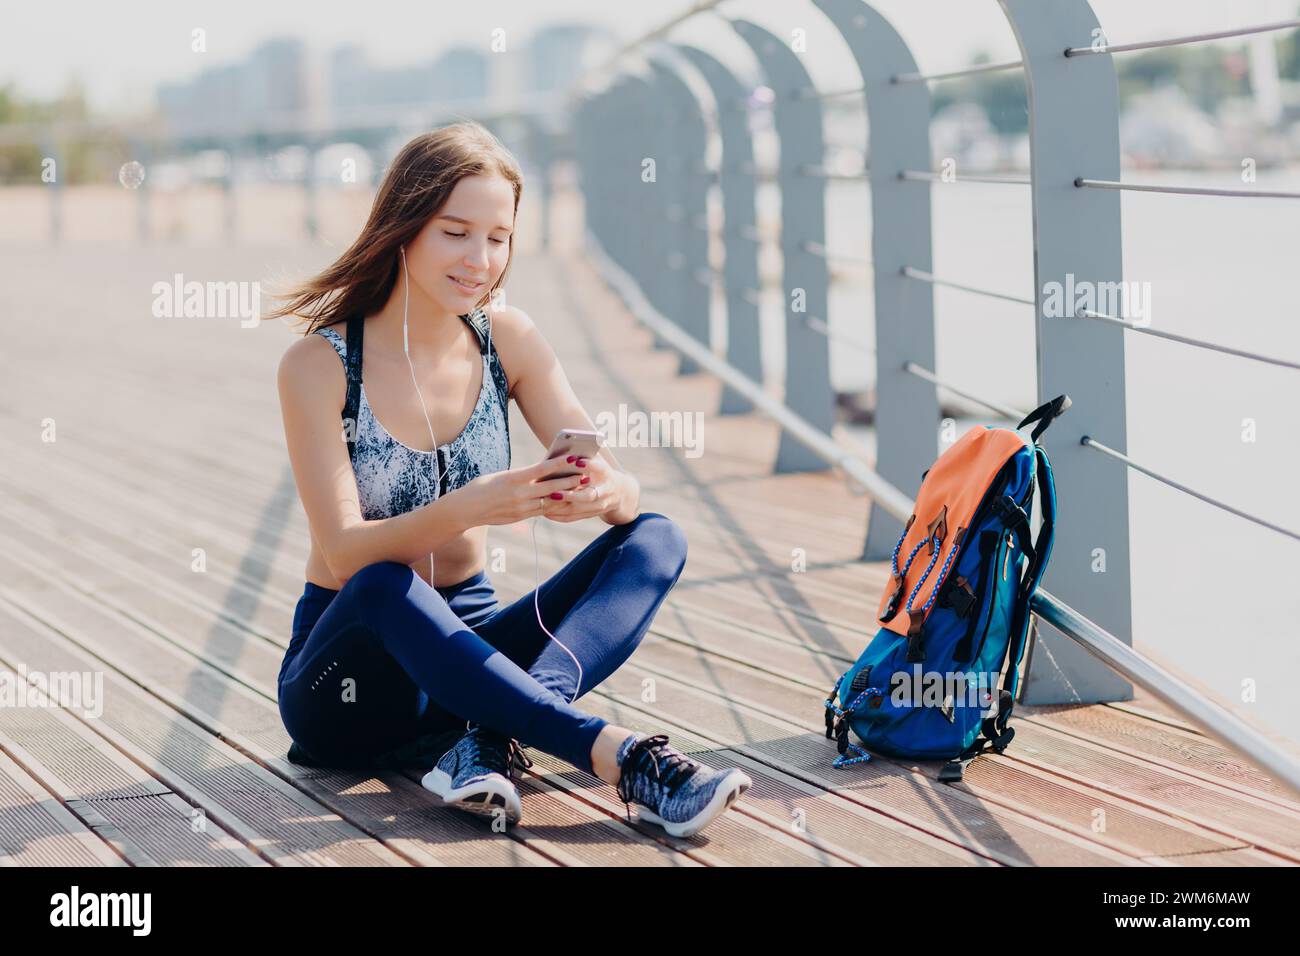 Eine ruhige junge Frau, die auf einer sonnigen Brücke sitzt und in ihr Smartphone vertieft ist. Stockfoto